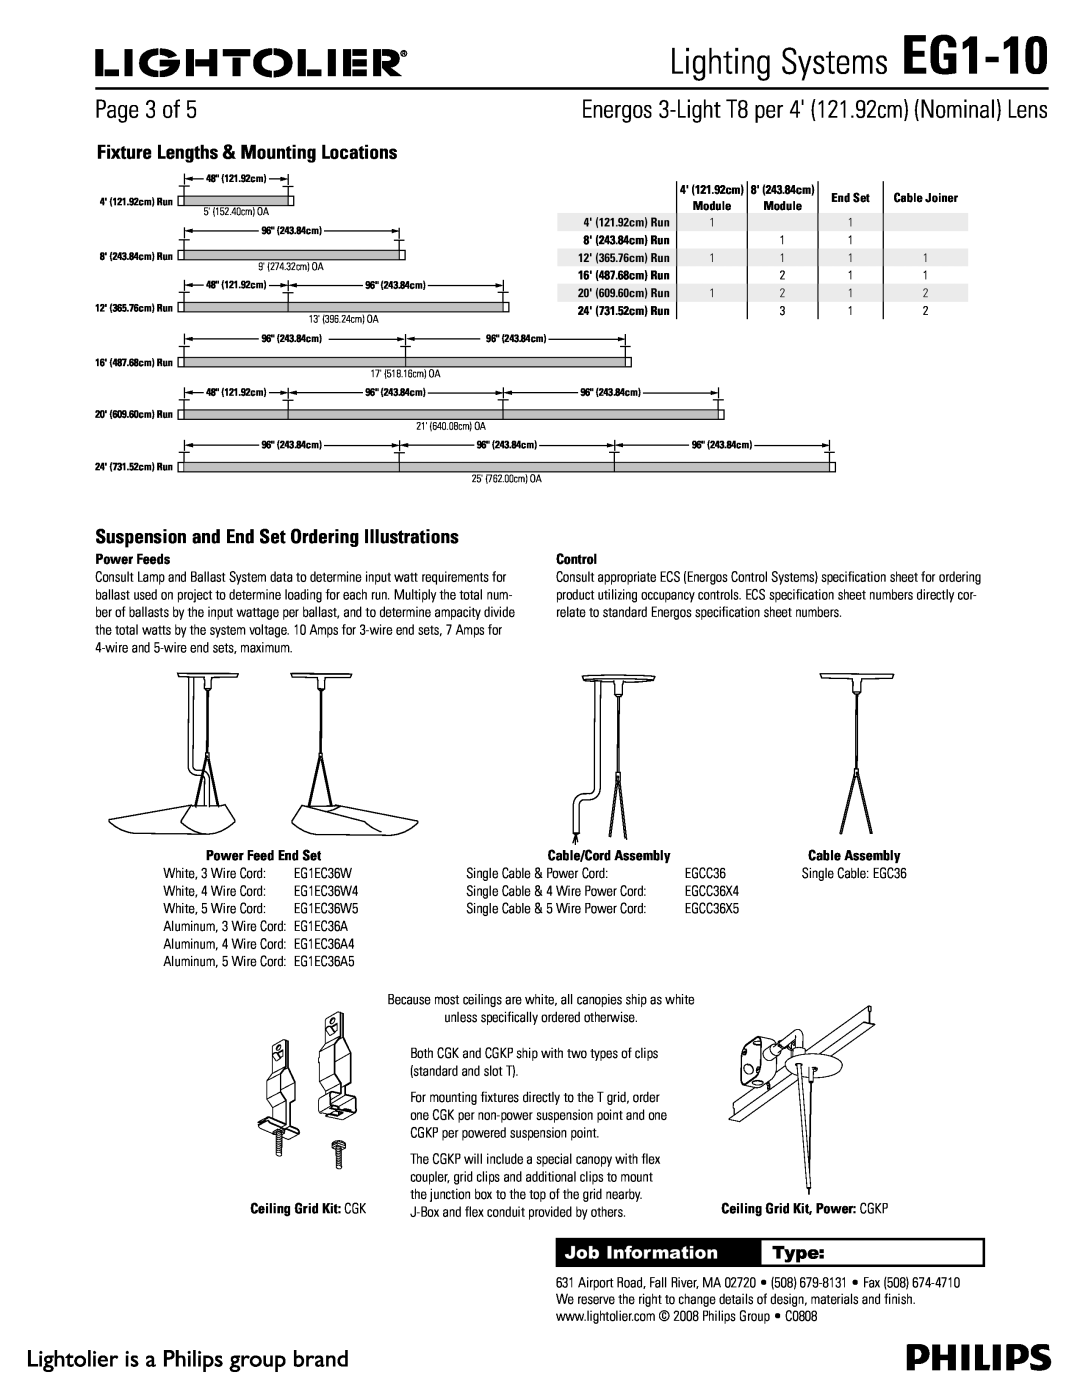 Lightolier 1BHFPG, Lighting Systems EG1-10, Job Information, Type, Ceiling Grid Kit $, 4 121.92cm Run, End Set 